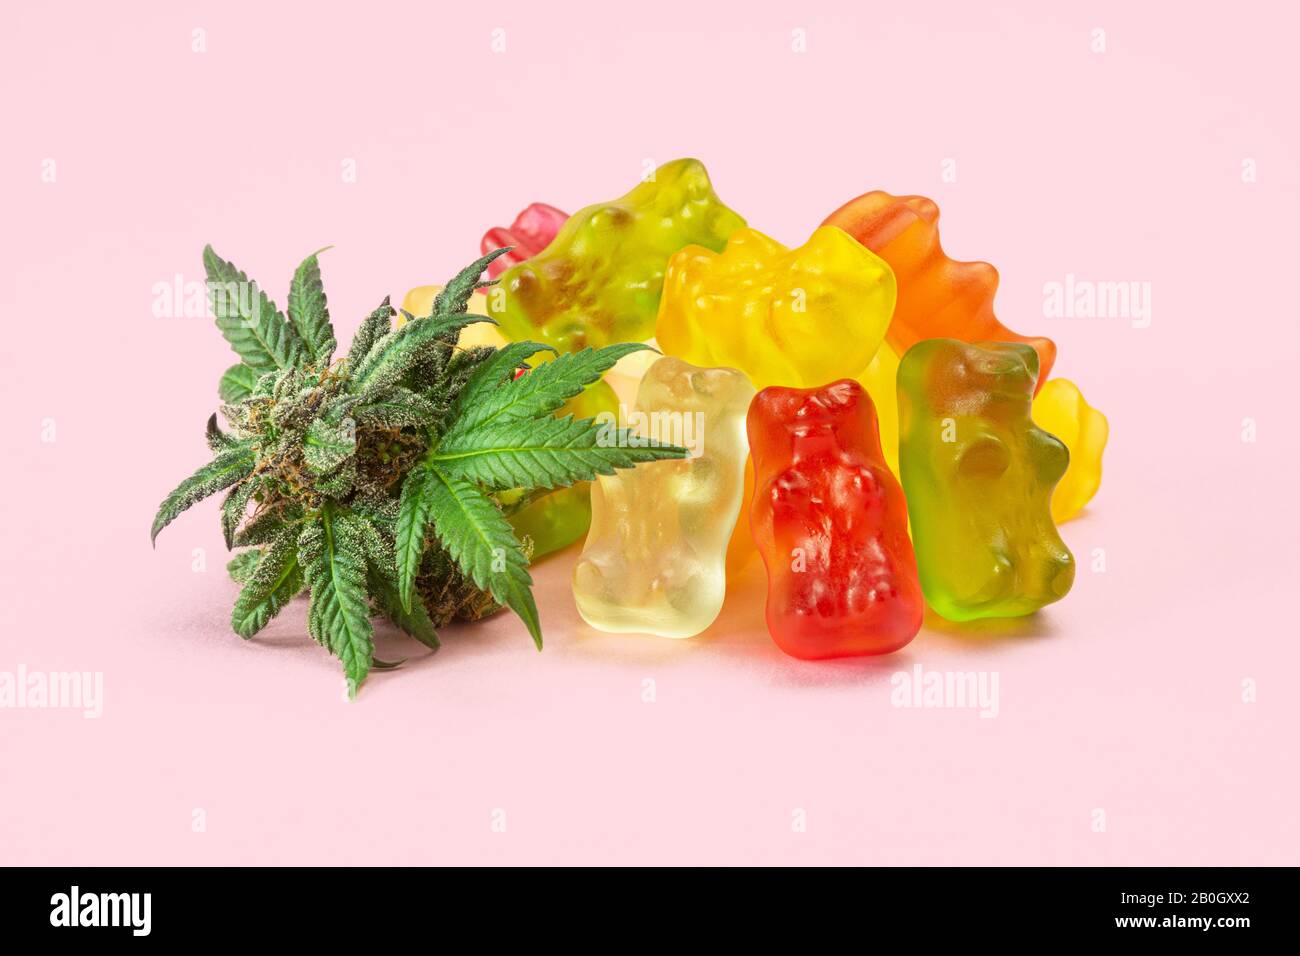 Ours gommanique marijuana médicale Edibles, Bonbons Perfusés avec CBD ou THC, avec cannabis Bud isolé sur fond rose Banque D'Images